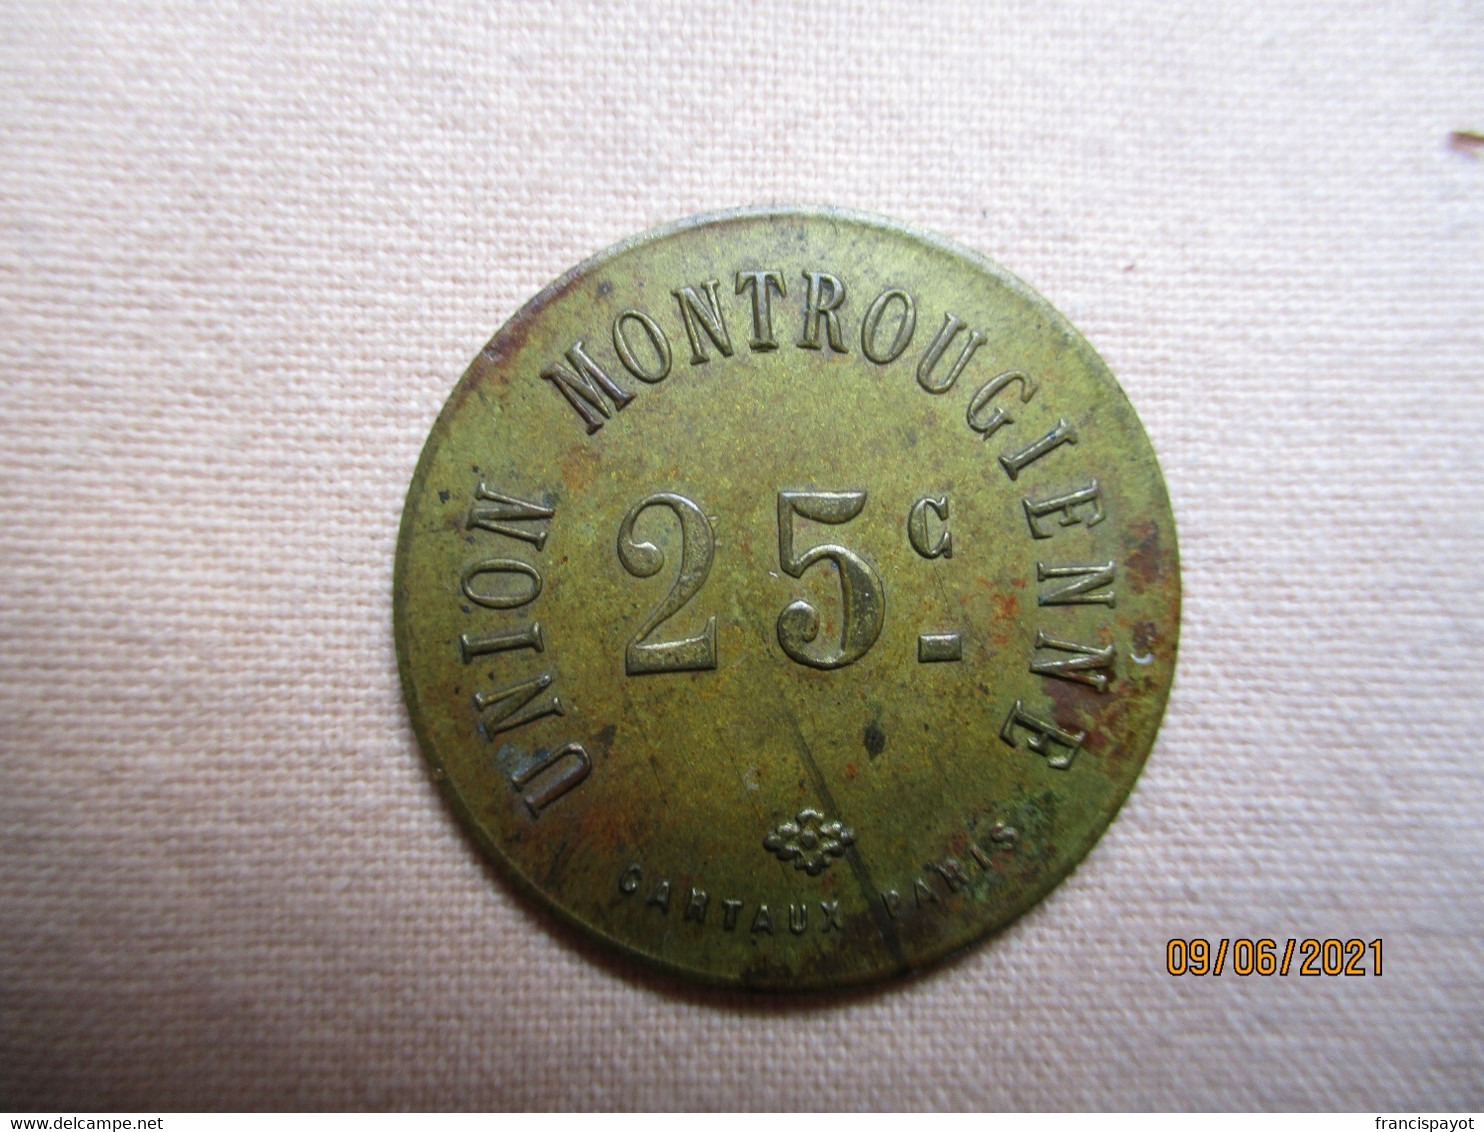 France: Union Montrougienne 25 Centimes - Noodgeld